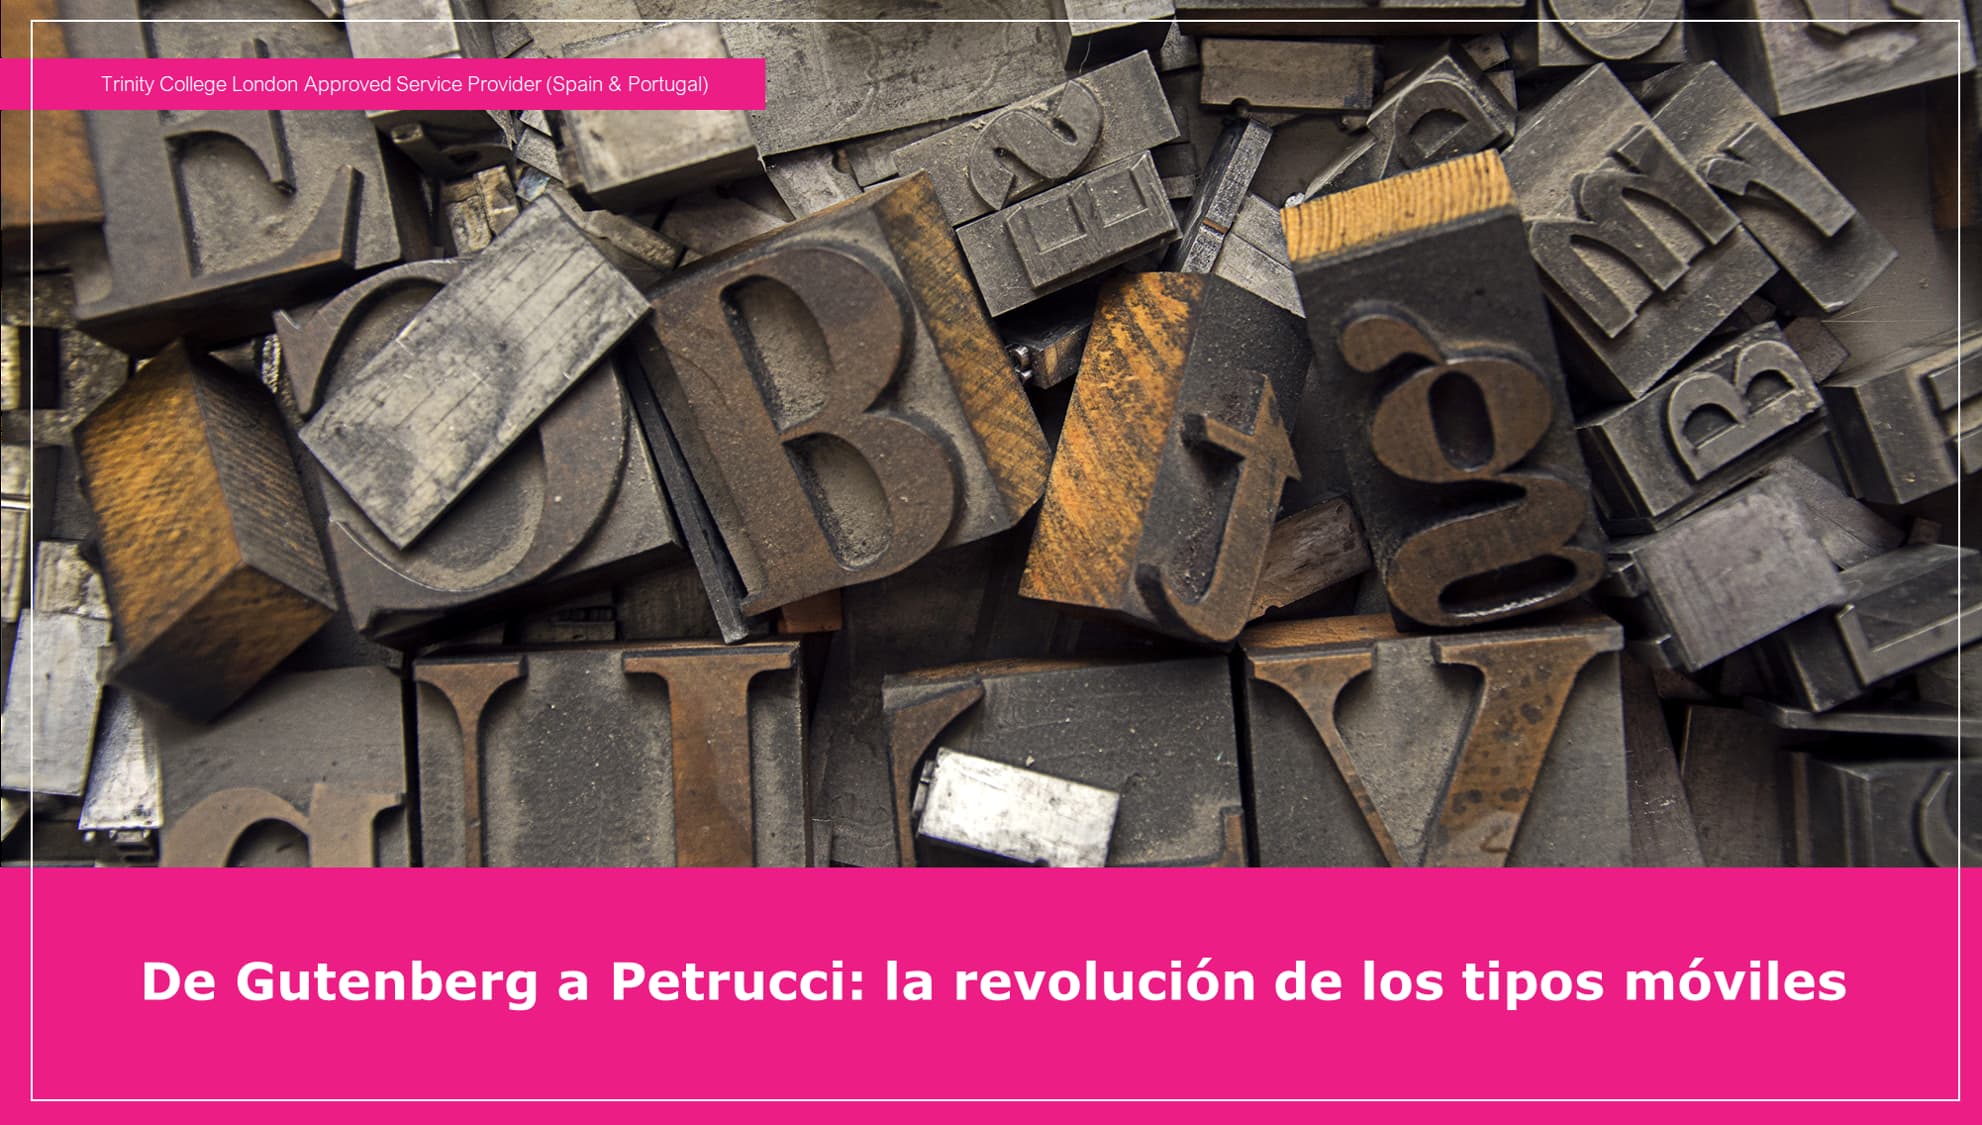 De la imprenta de Gutenberg a la de Petrucci